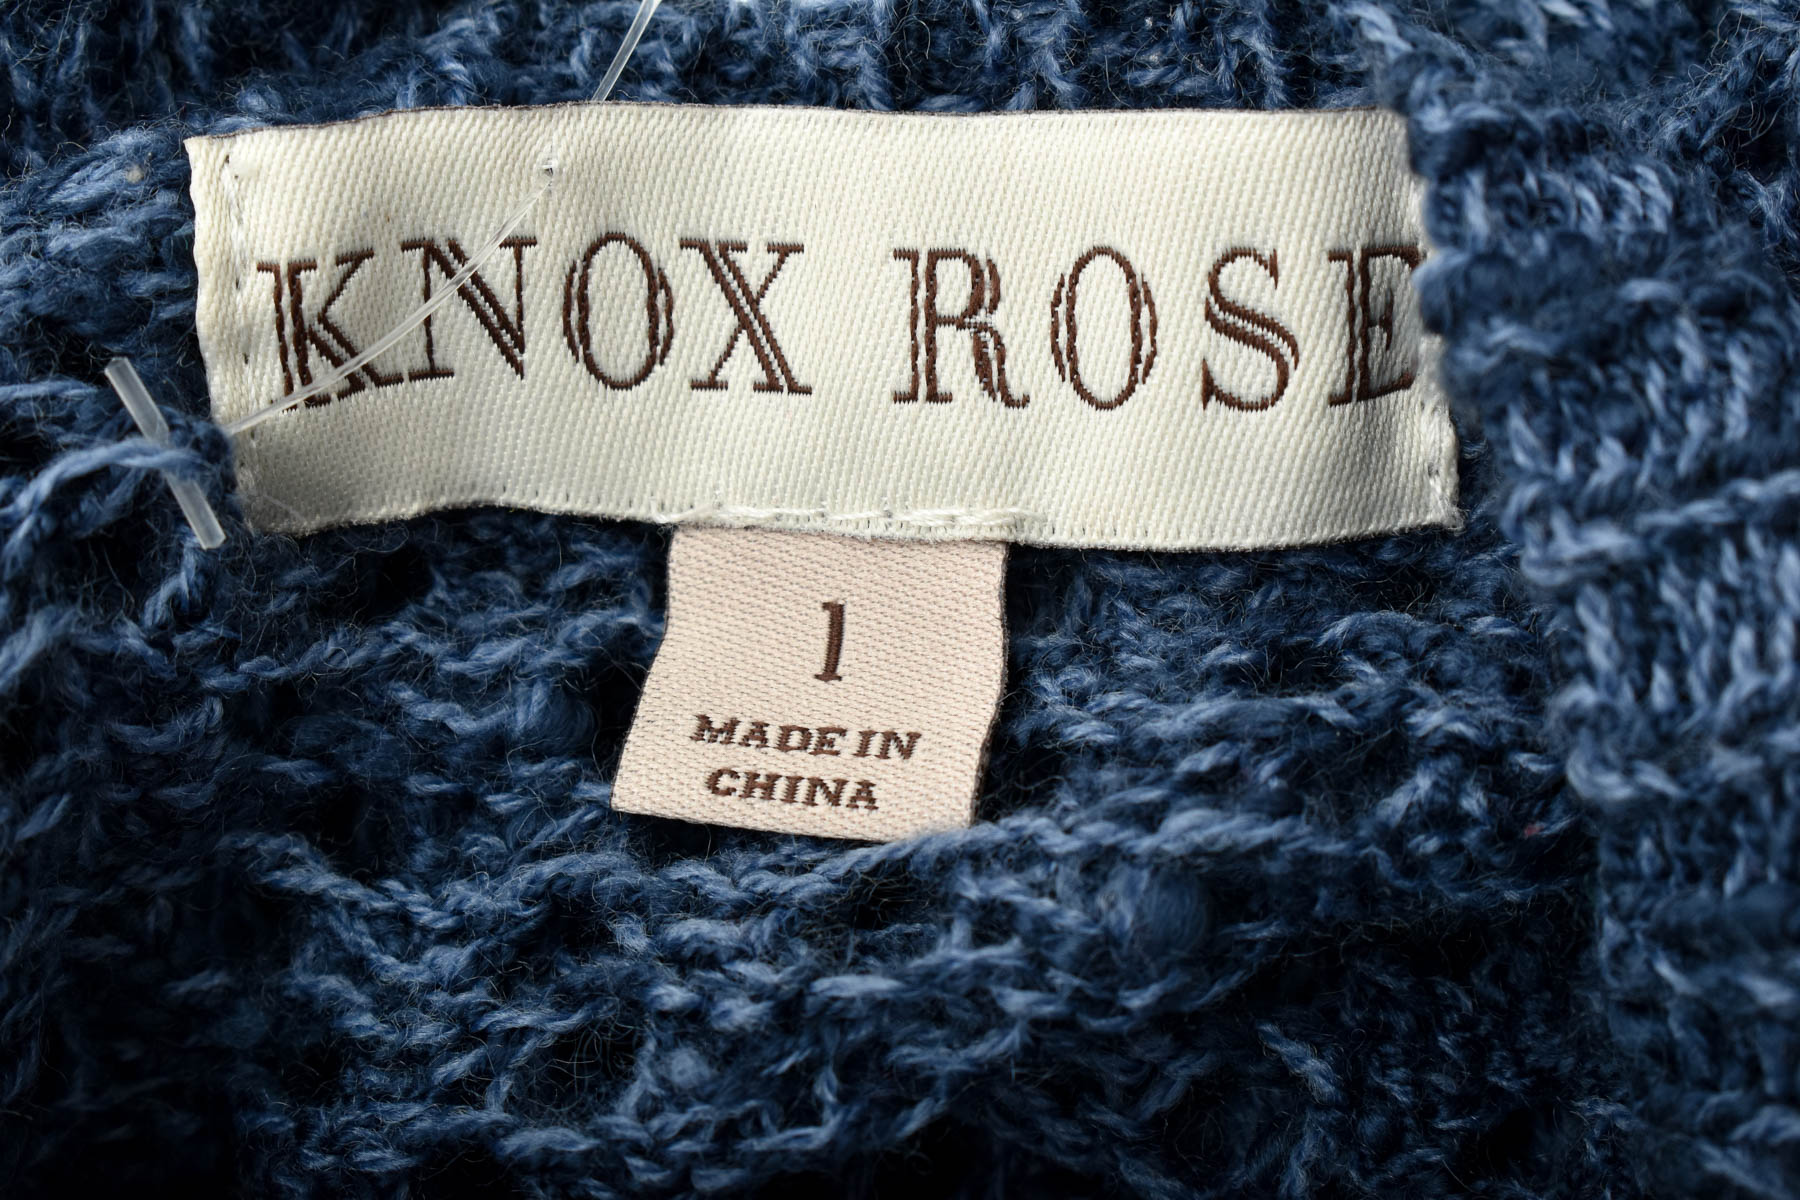 Γυναικείο πουλόβερ - KNOX ROSE - 2